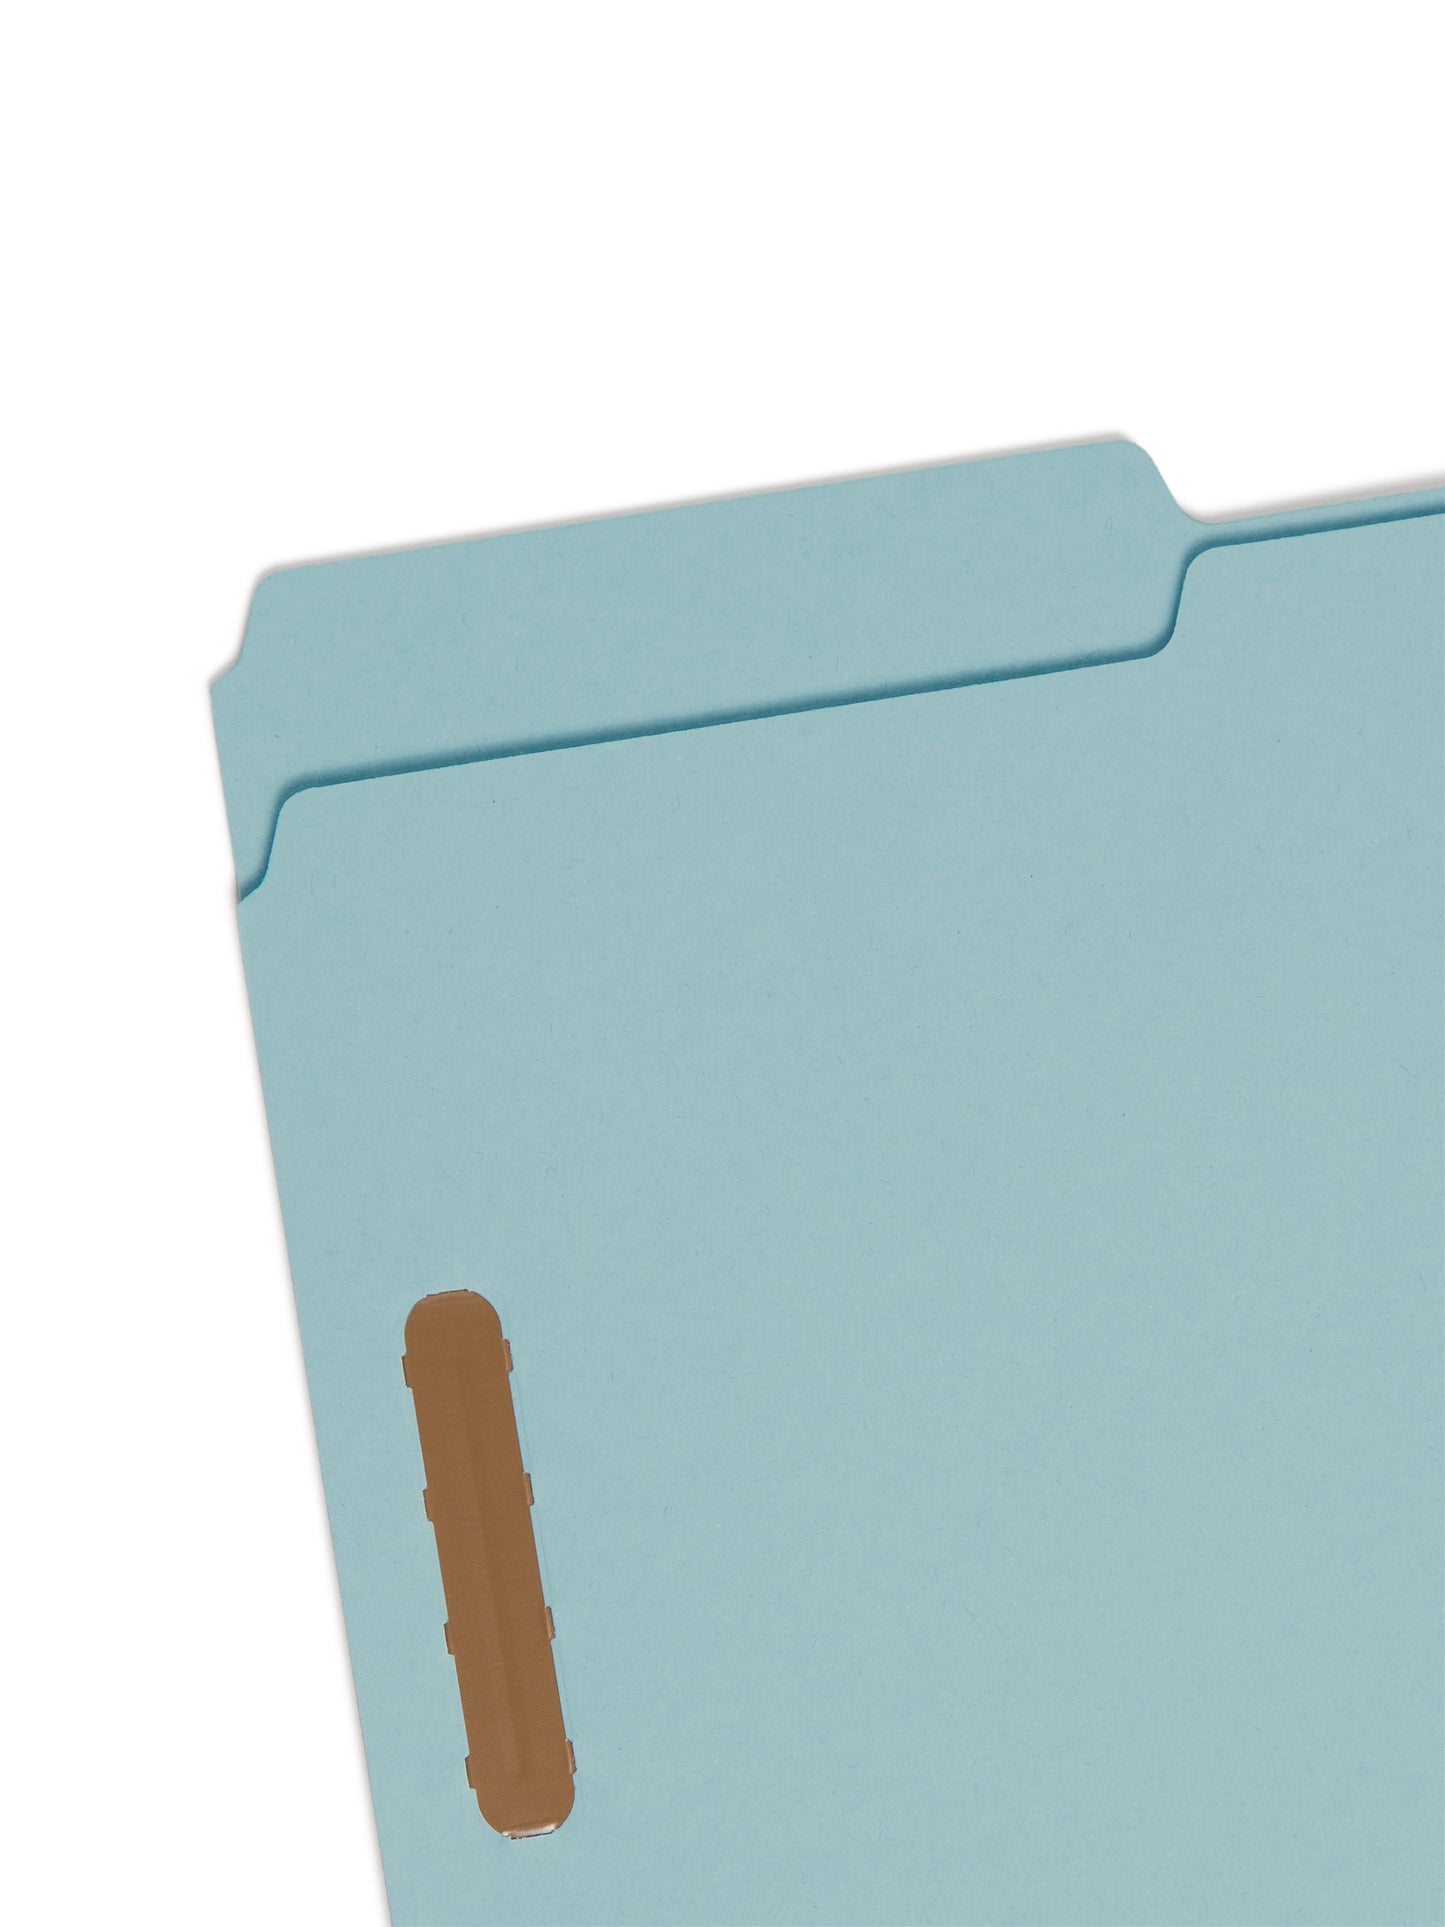 Pressboard Fastener File Folders, 1 inch Expansion, Blue Color, Legal Size, 